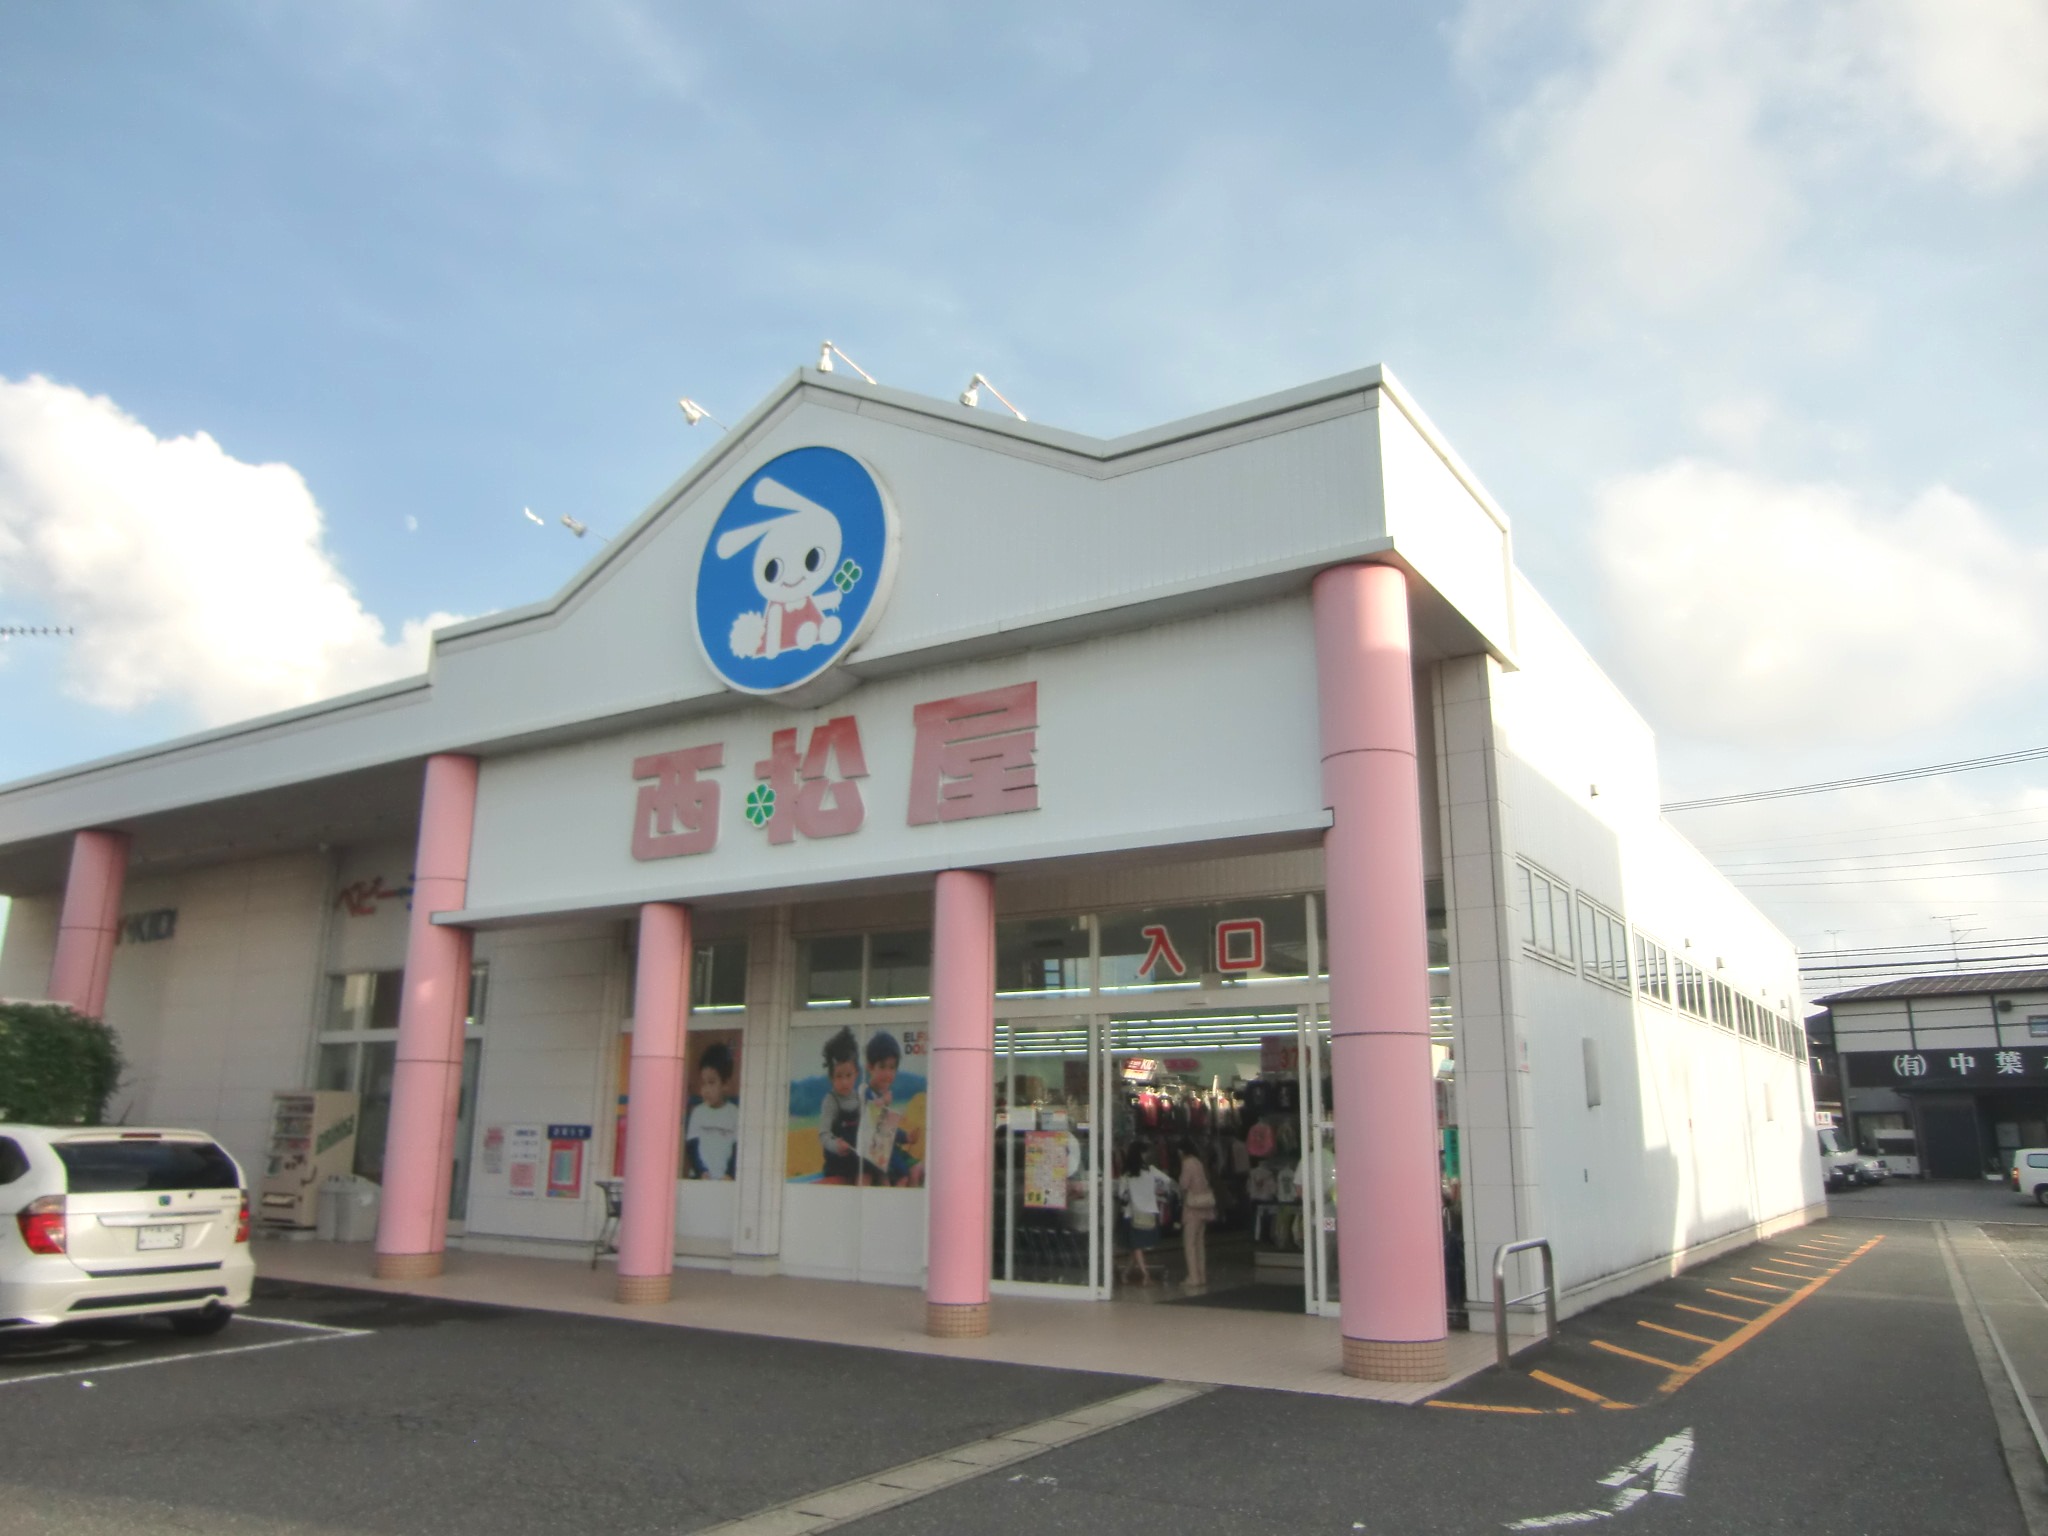 Shopping centre. 1039m until Nishimatsuya Inage Obuka store (shopping center)